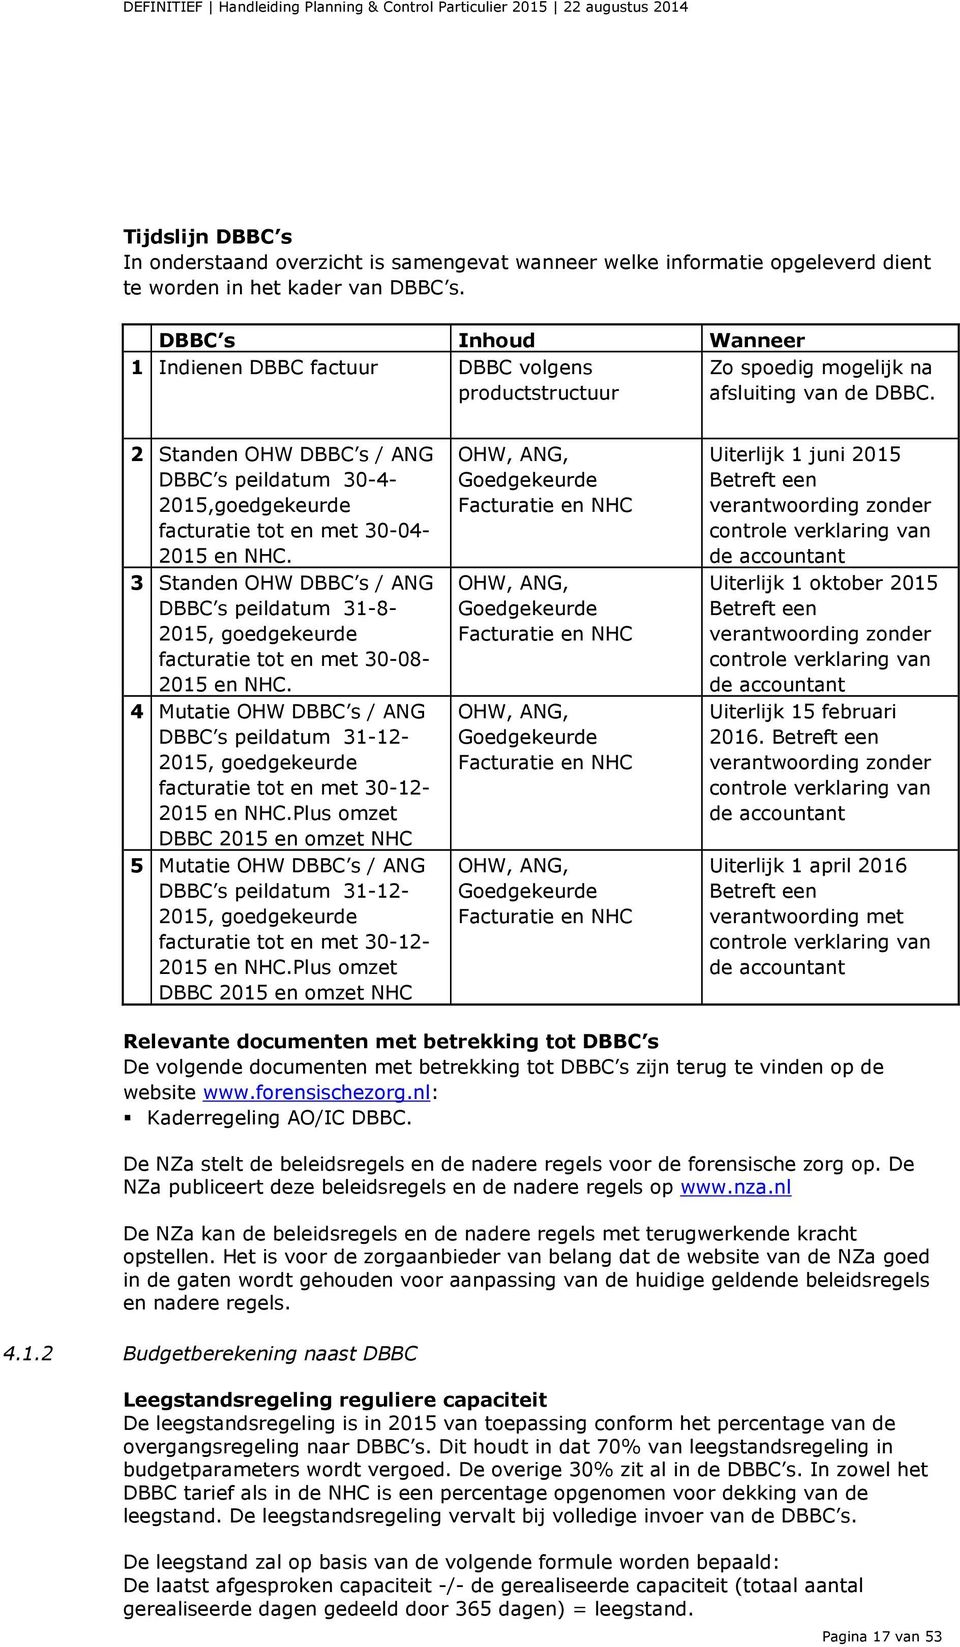 2 Standen OHW DBBC s / ANG DBBC s peildatum 30-4- 2015,goedgekeurde facturatie tot en met 30-04- 2015 en NHC.